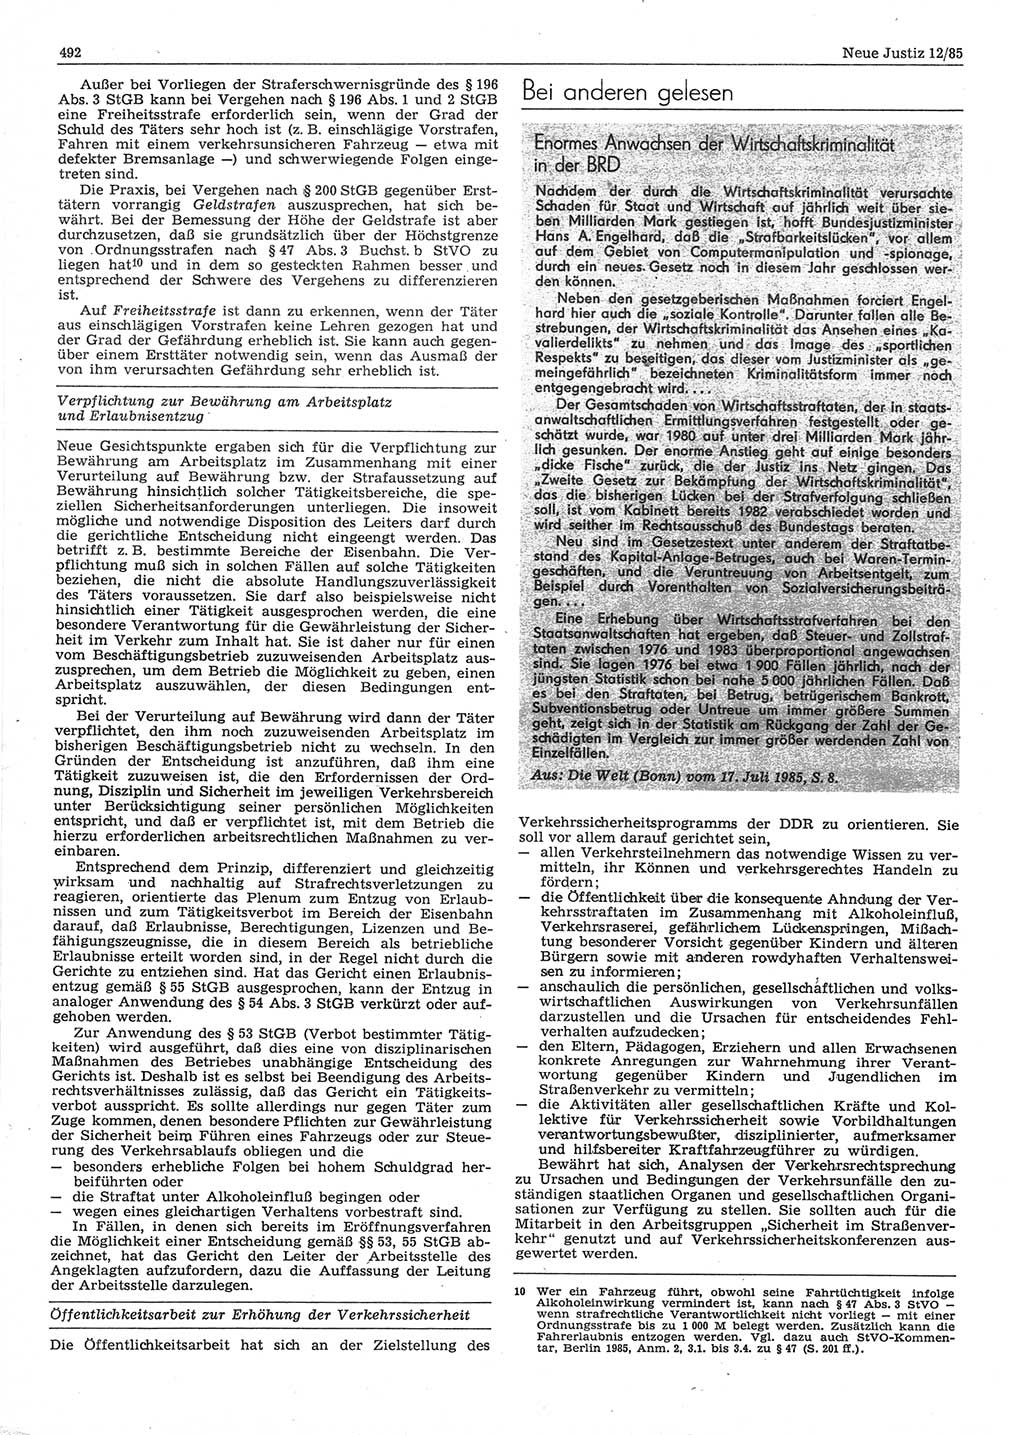 Neue Justiz (NJ), Zeitschrift für sozialistisches Recht und Gesetzlichkeit [Deutsche Demokratische Republik (DDR)], 39. Jahrgang 1985, Seite 492 (NJ DDR 1985, S. 492)